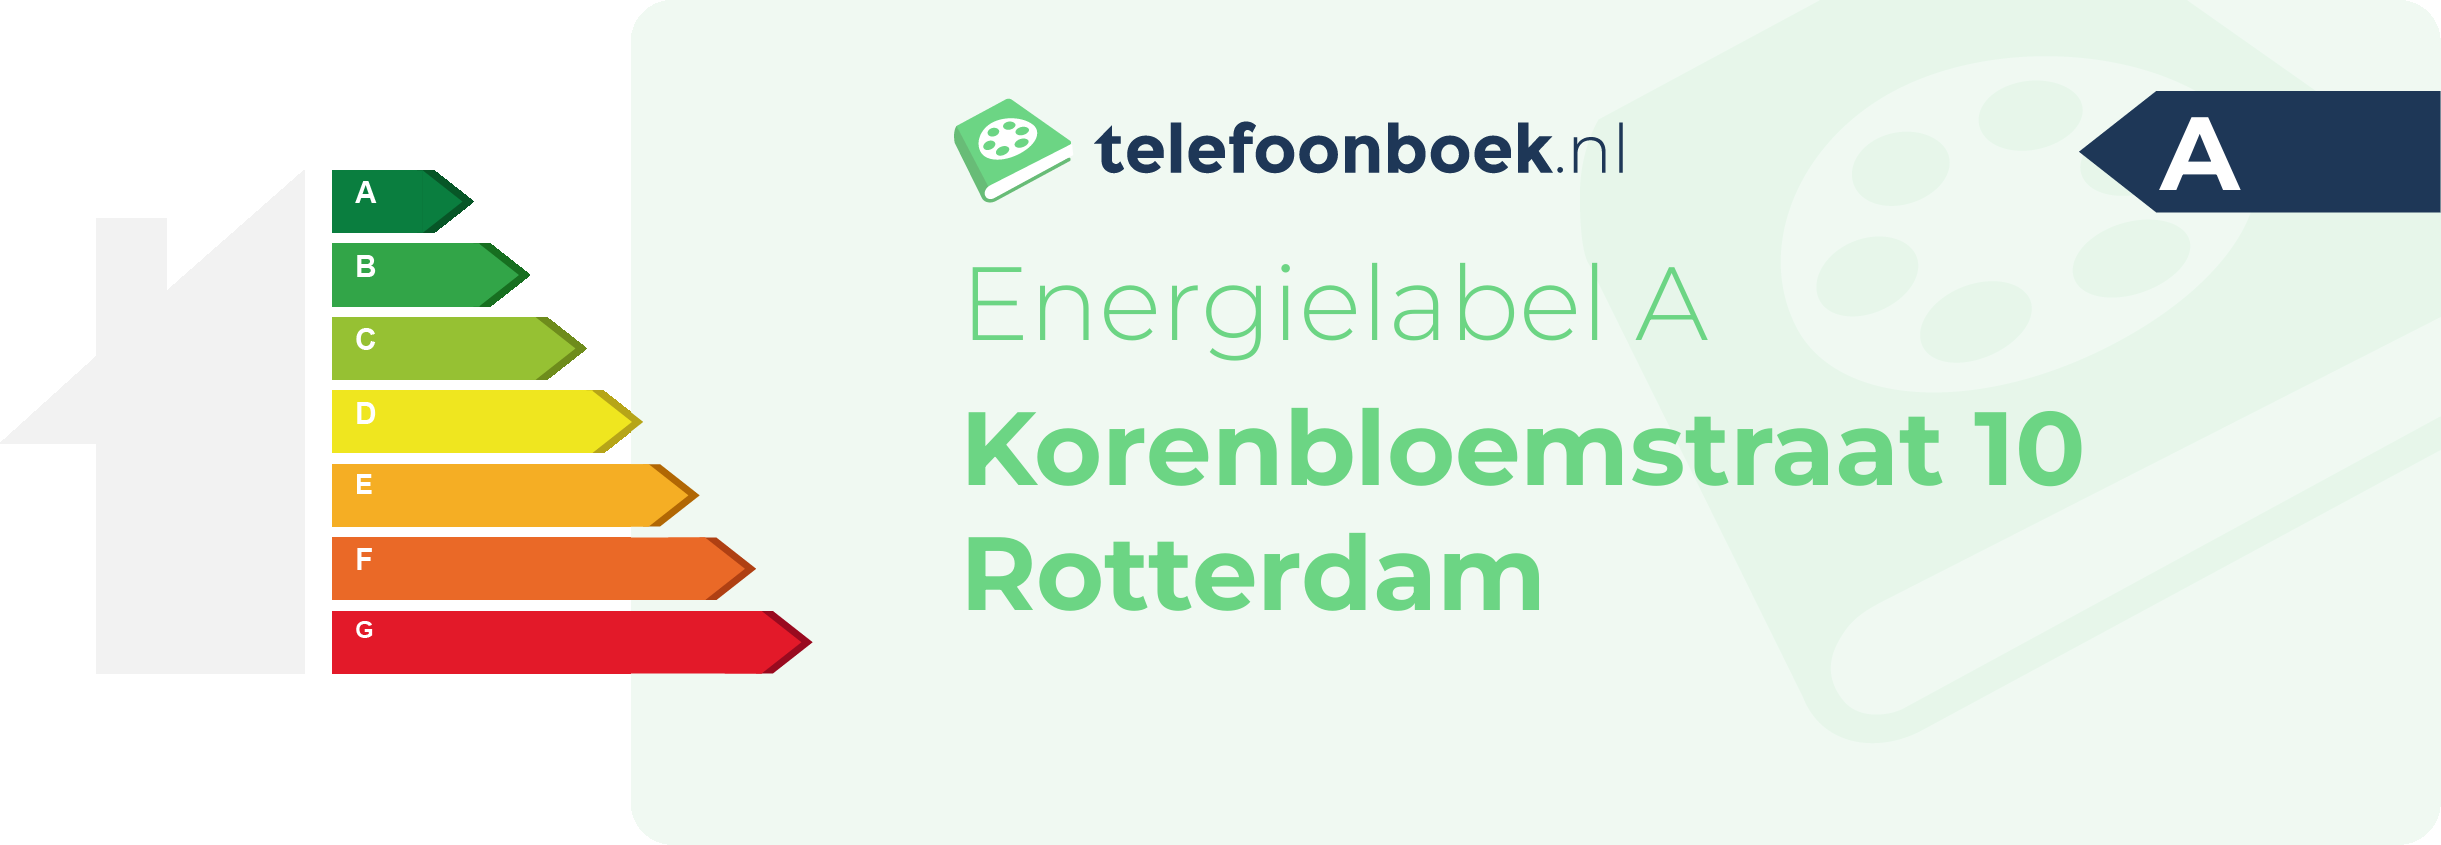 Energielabel Korenbloemstraat 10 Rotterdam